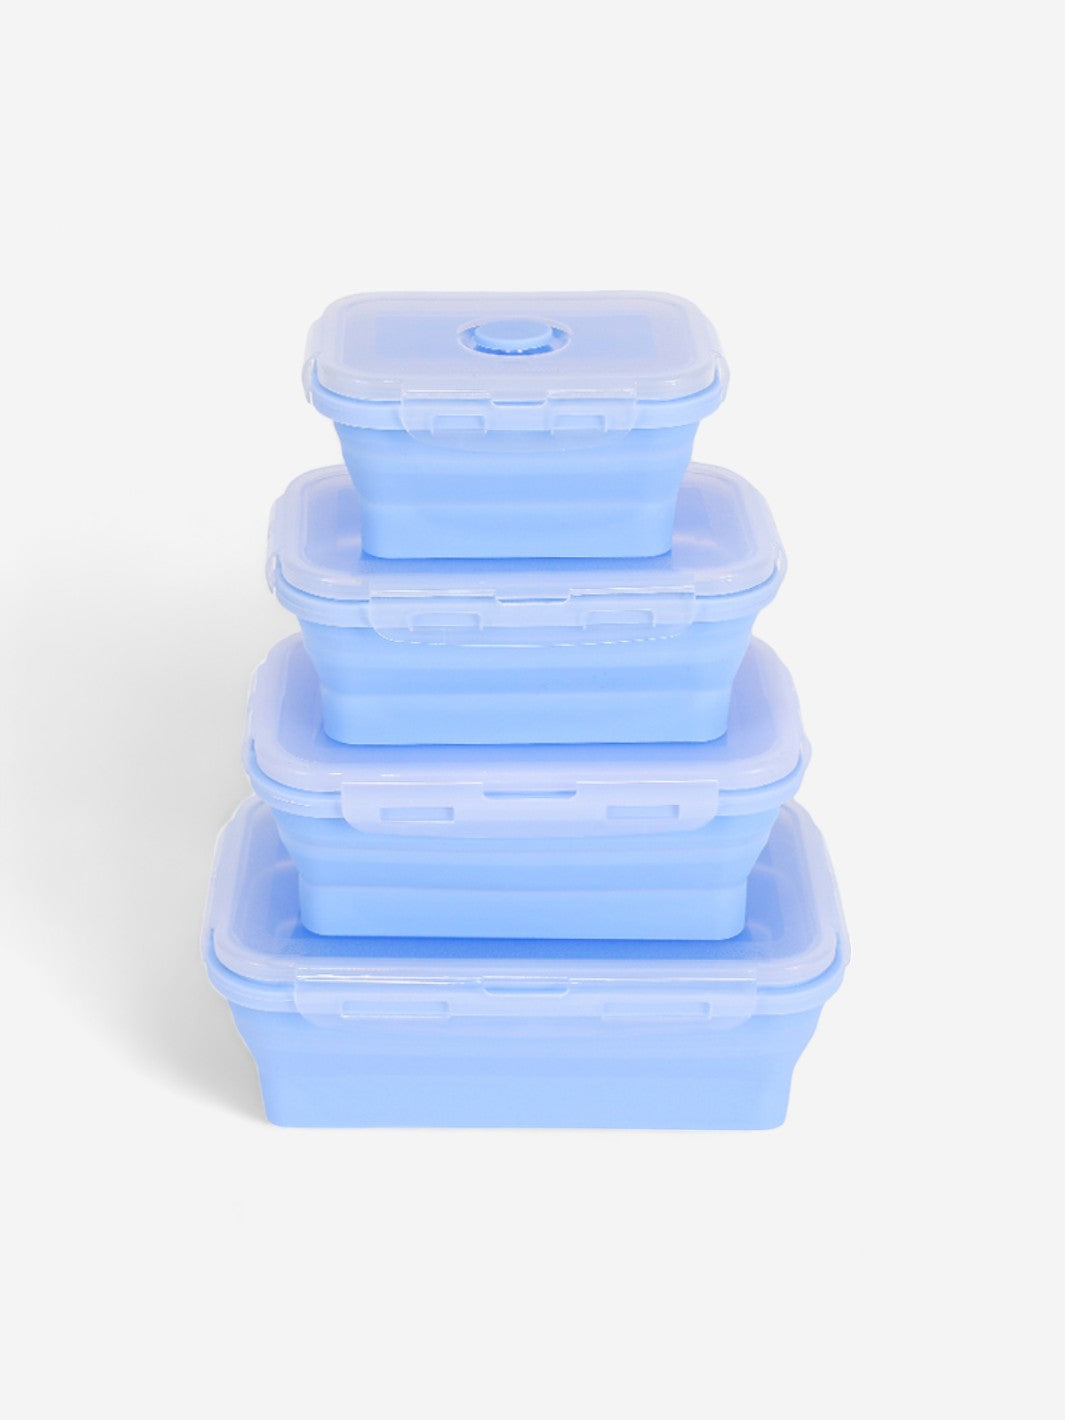 Lucky - Lunch Box Rétractables - Bleu / 2850 ml - Lucky-eats